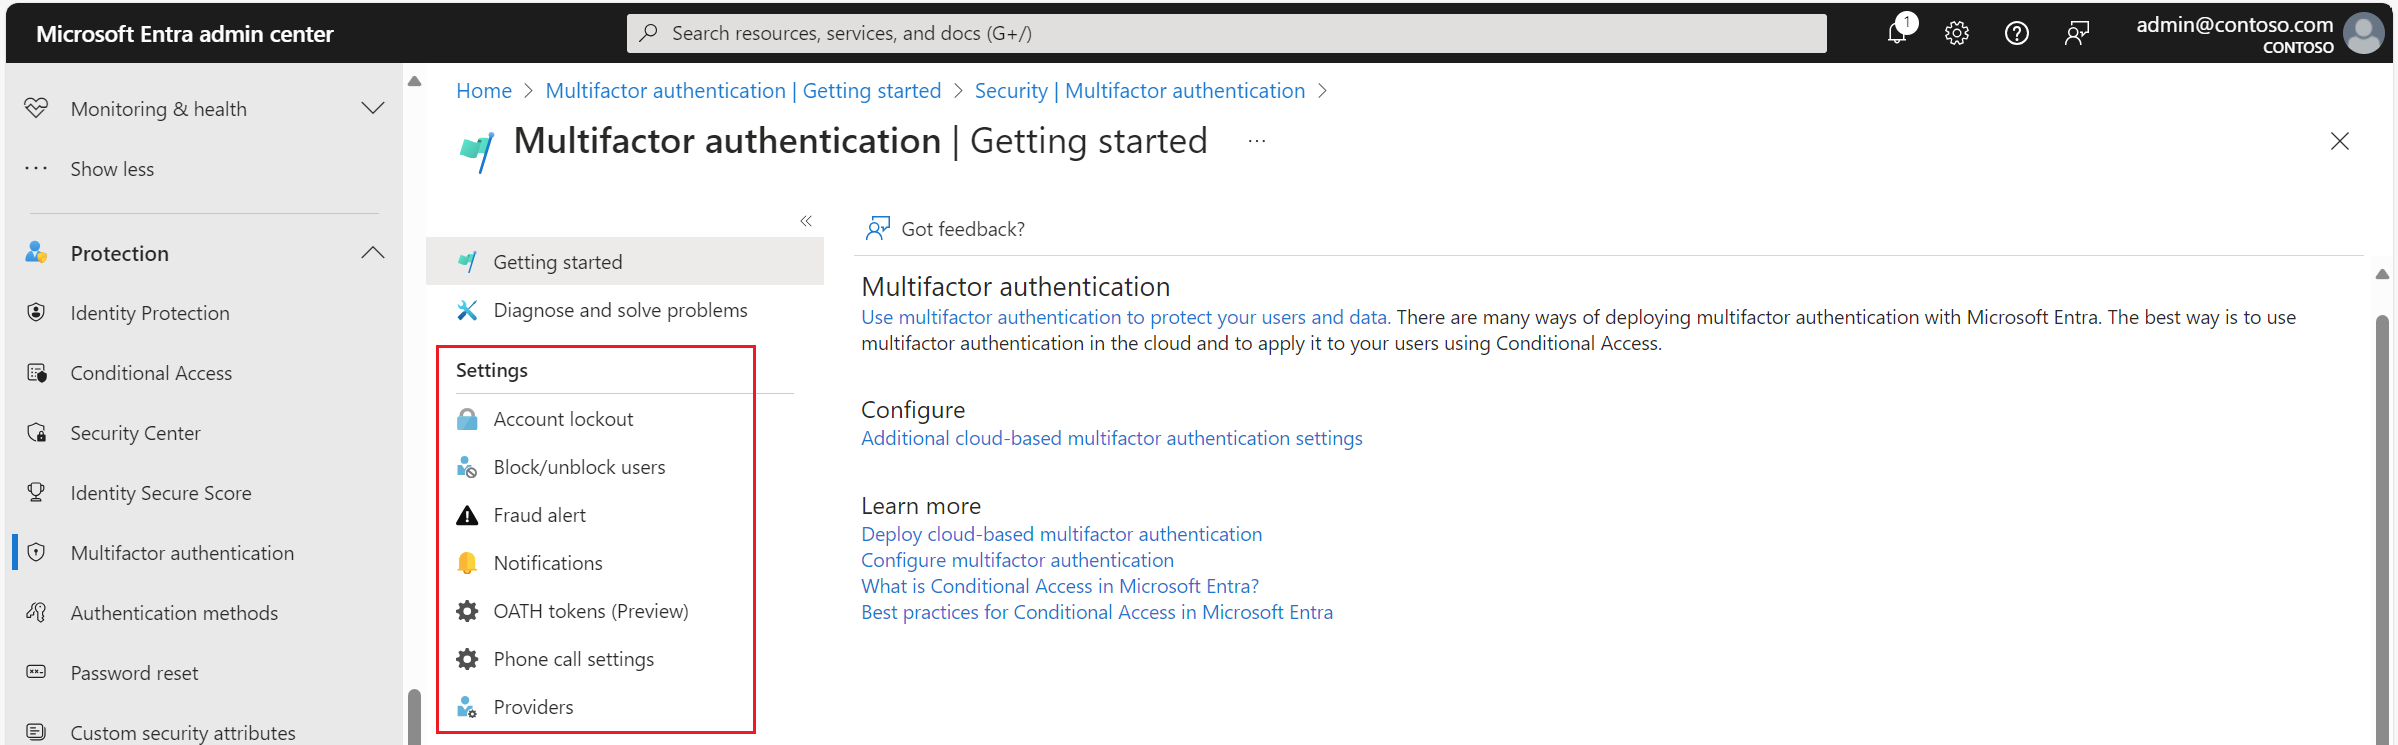 Licença da autenticação multifator do Microsoft Entra